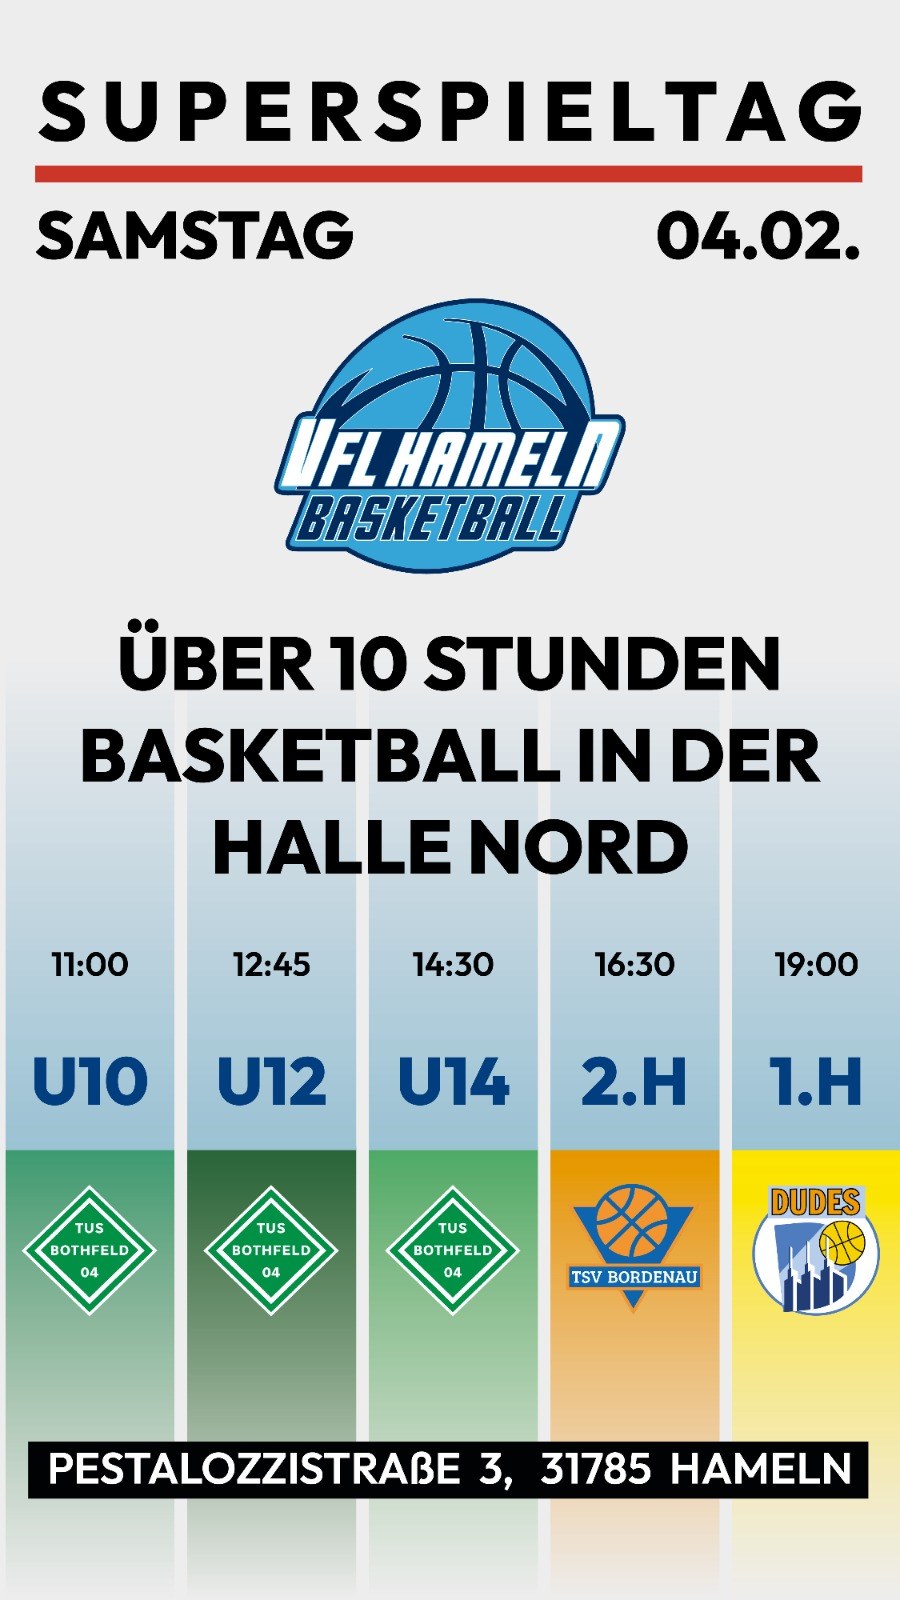 Superspieltag Basketball Ankündigung Flyer VfL Hameln